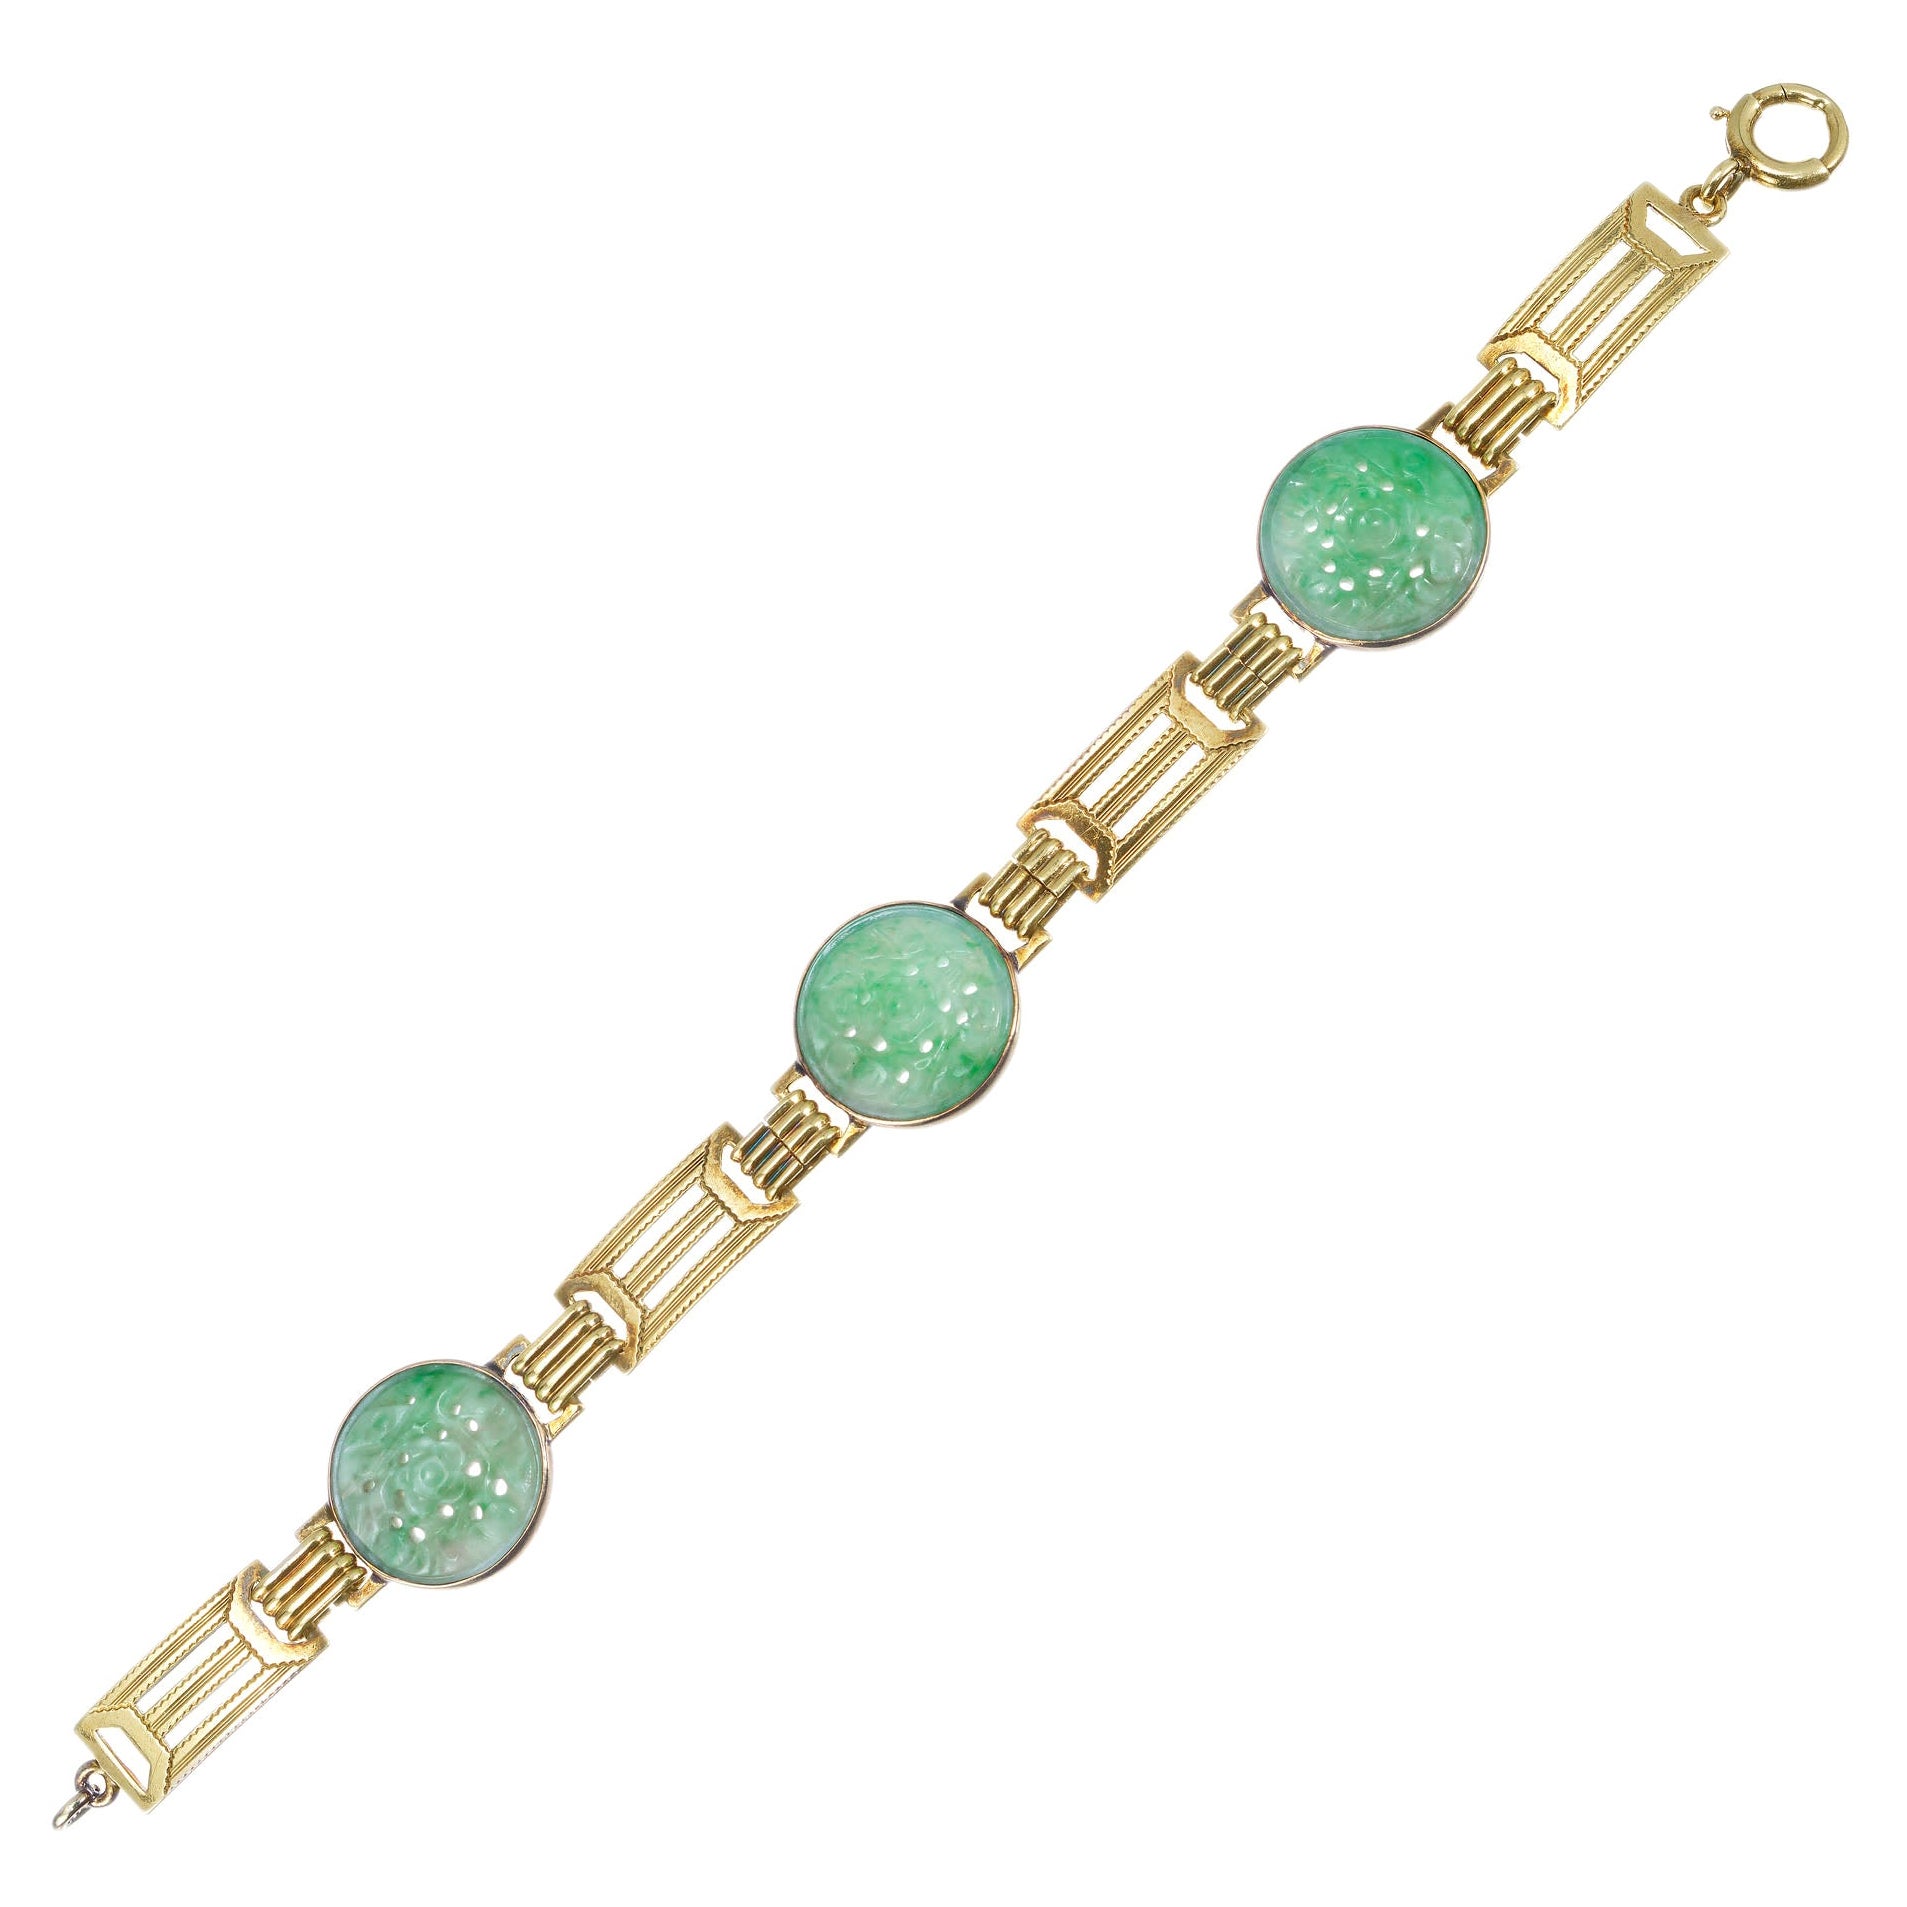 Art Deco echtes geschnitztes Gliederarmband aus Jadeit Jade in Grün und Gold mit Grüngold